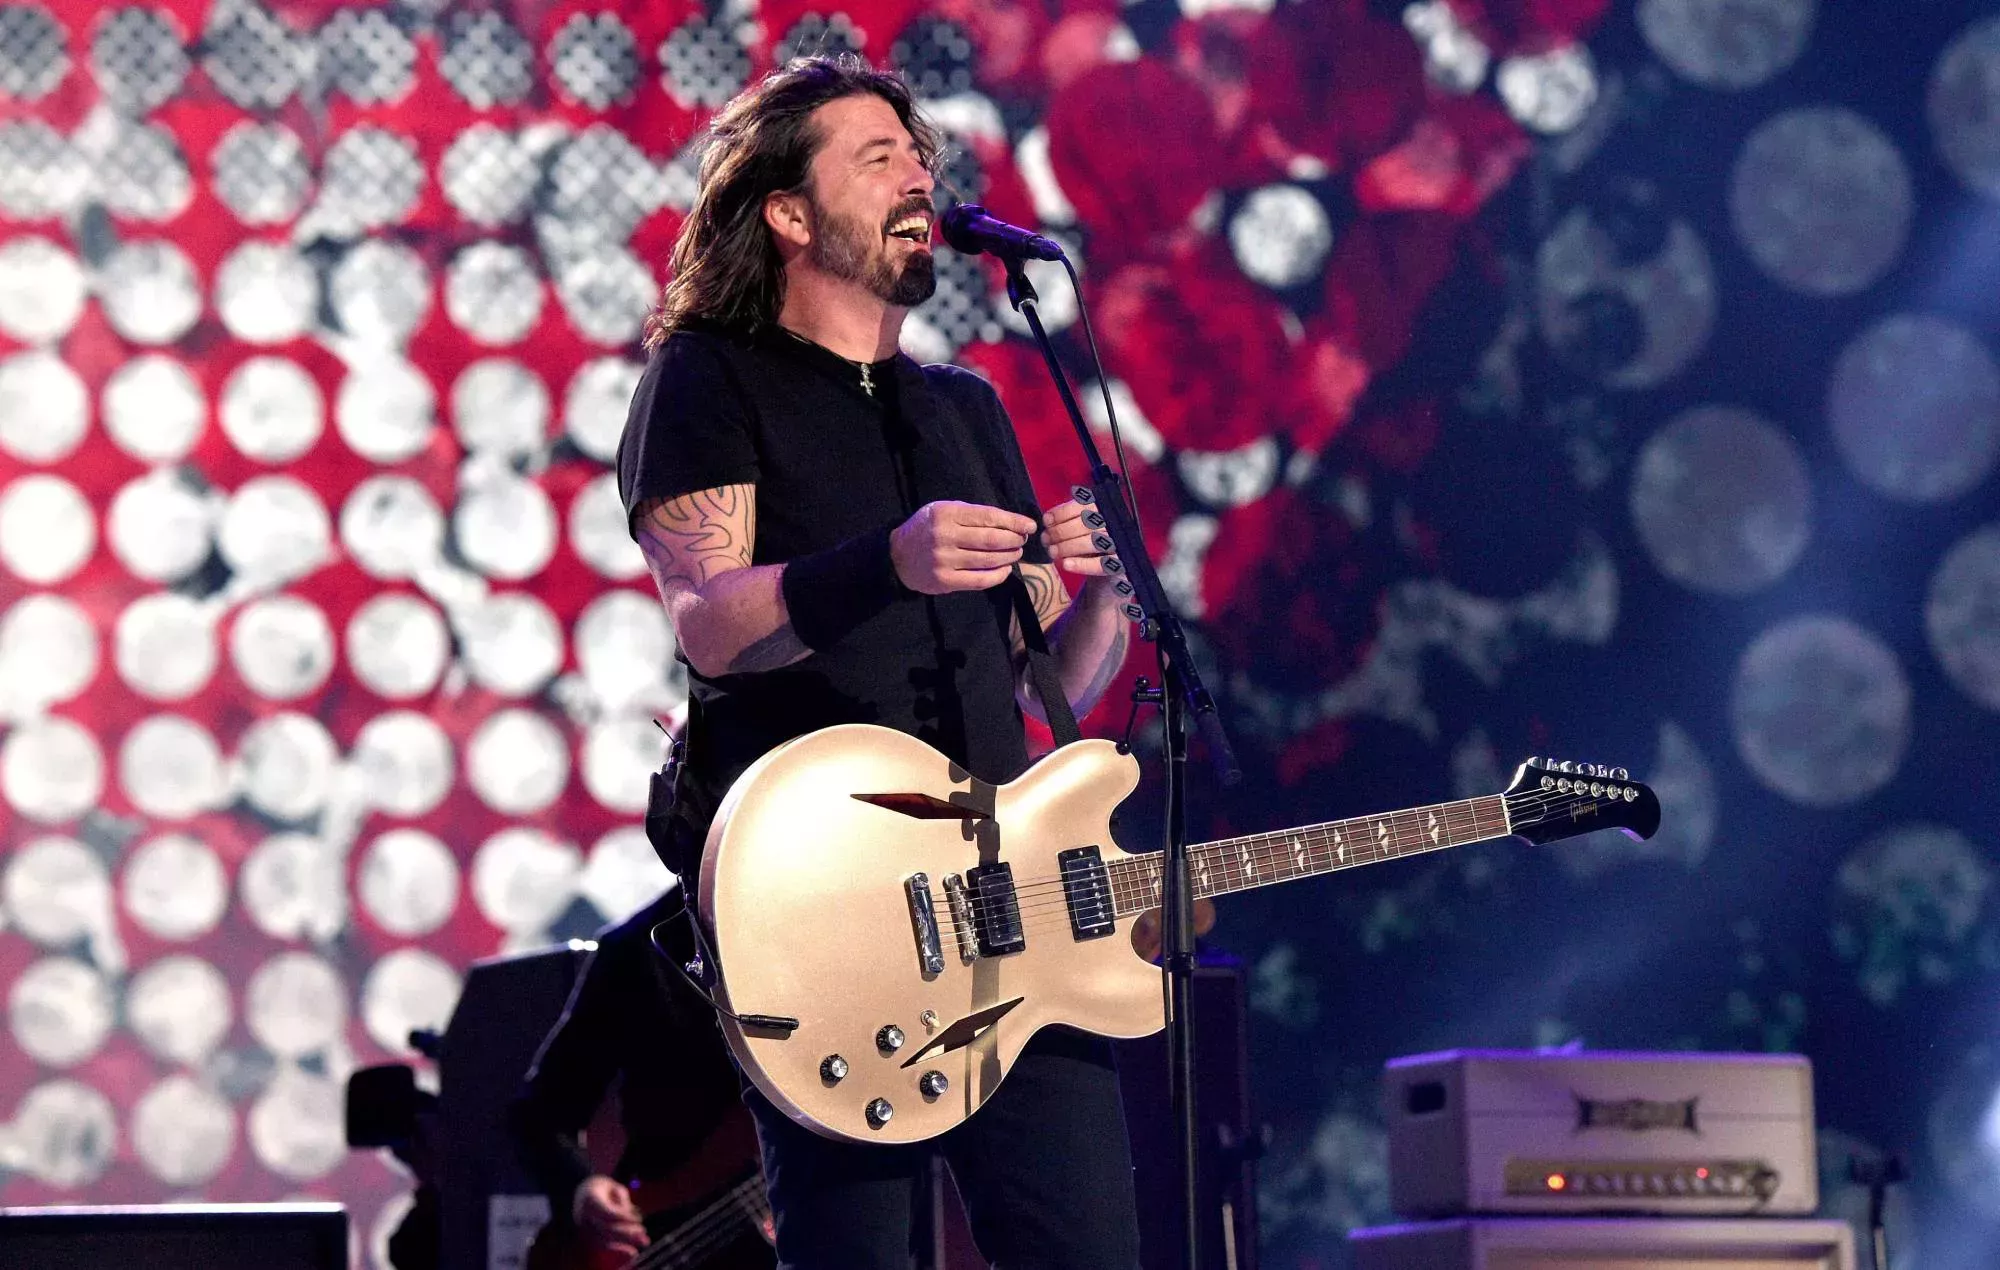 El líder de Foo Fighters, Dave Grohl, revela sus rituales antes de los conciertos